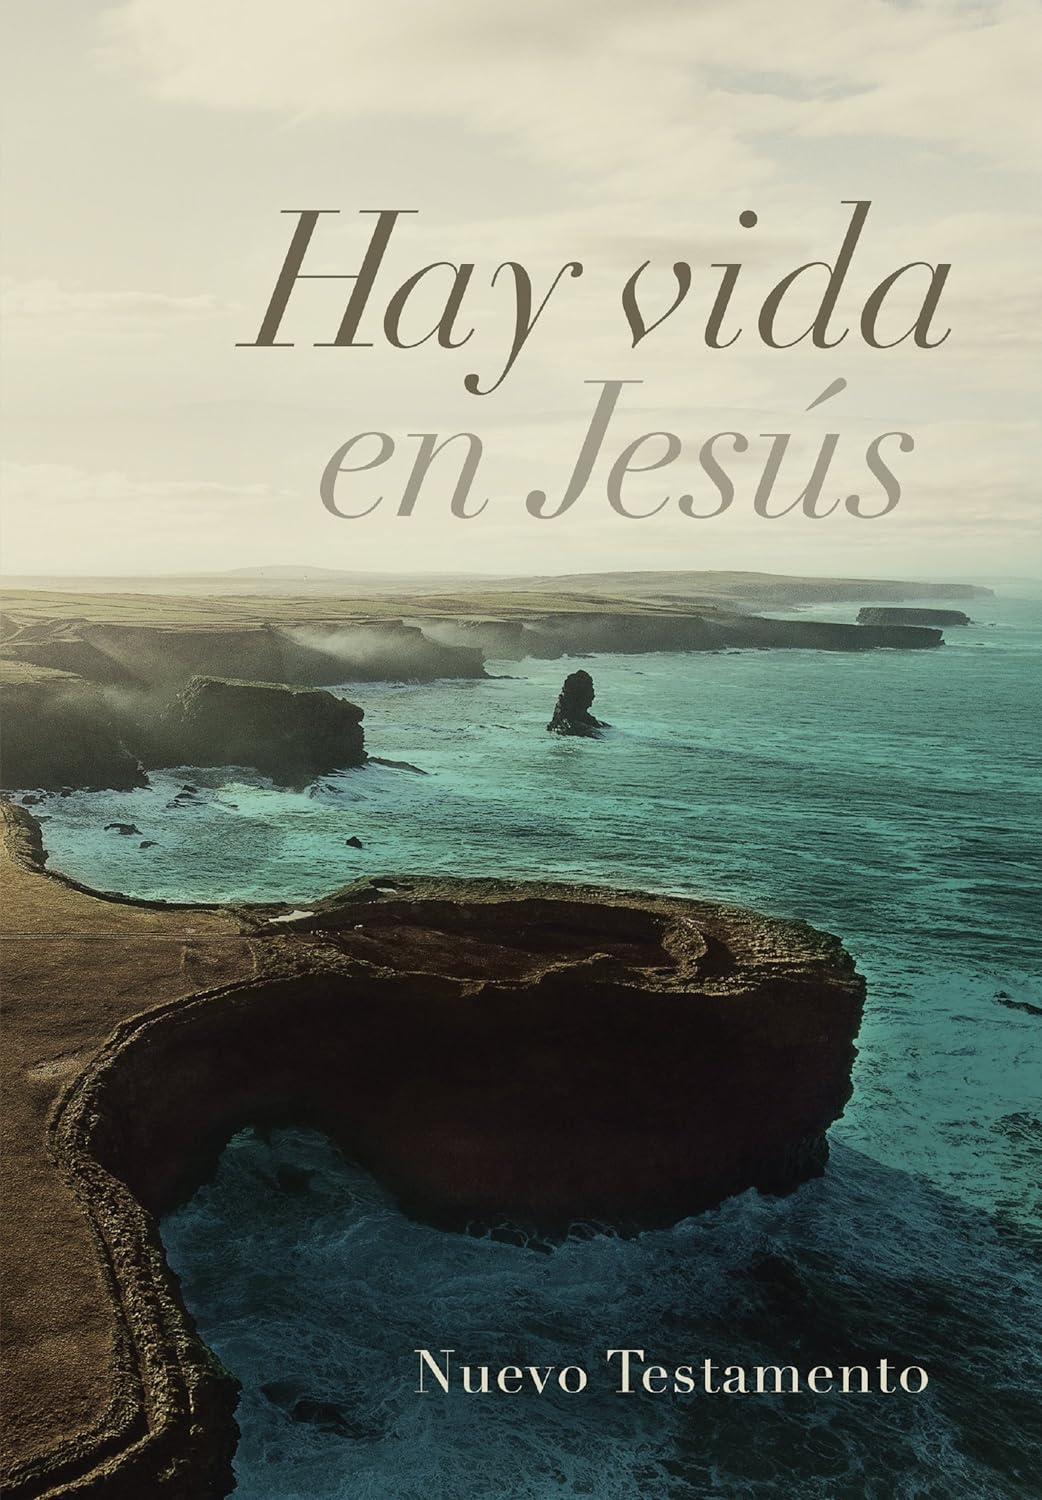 Nuevo Testamento: Hay vida en Jesús